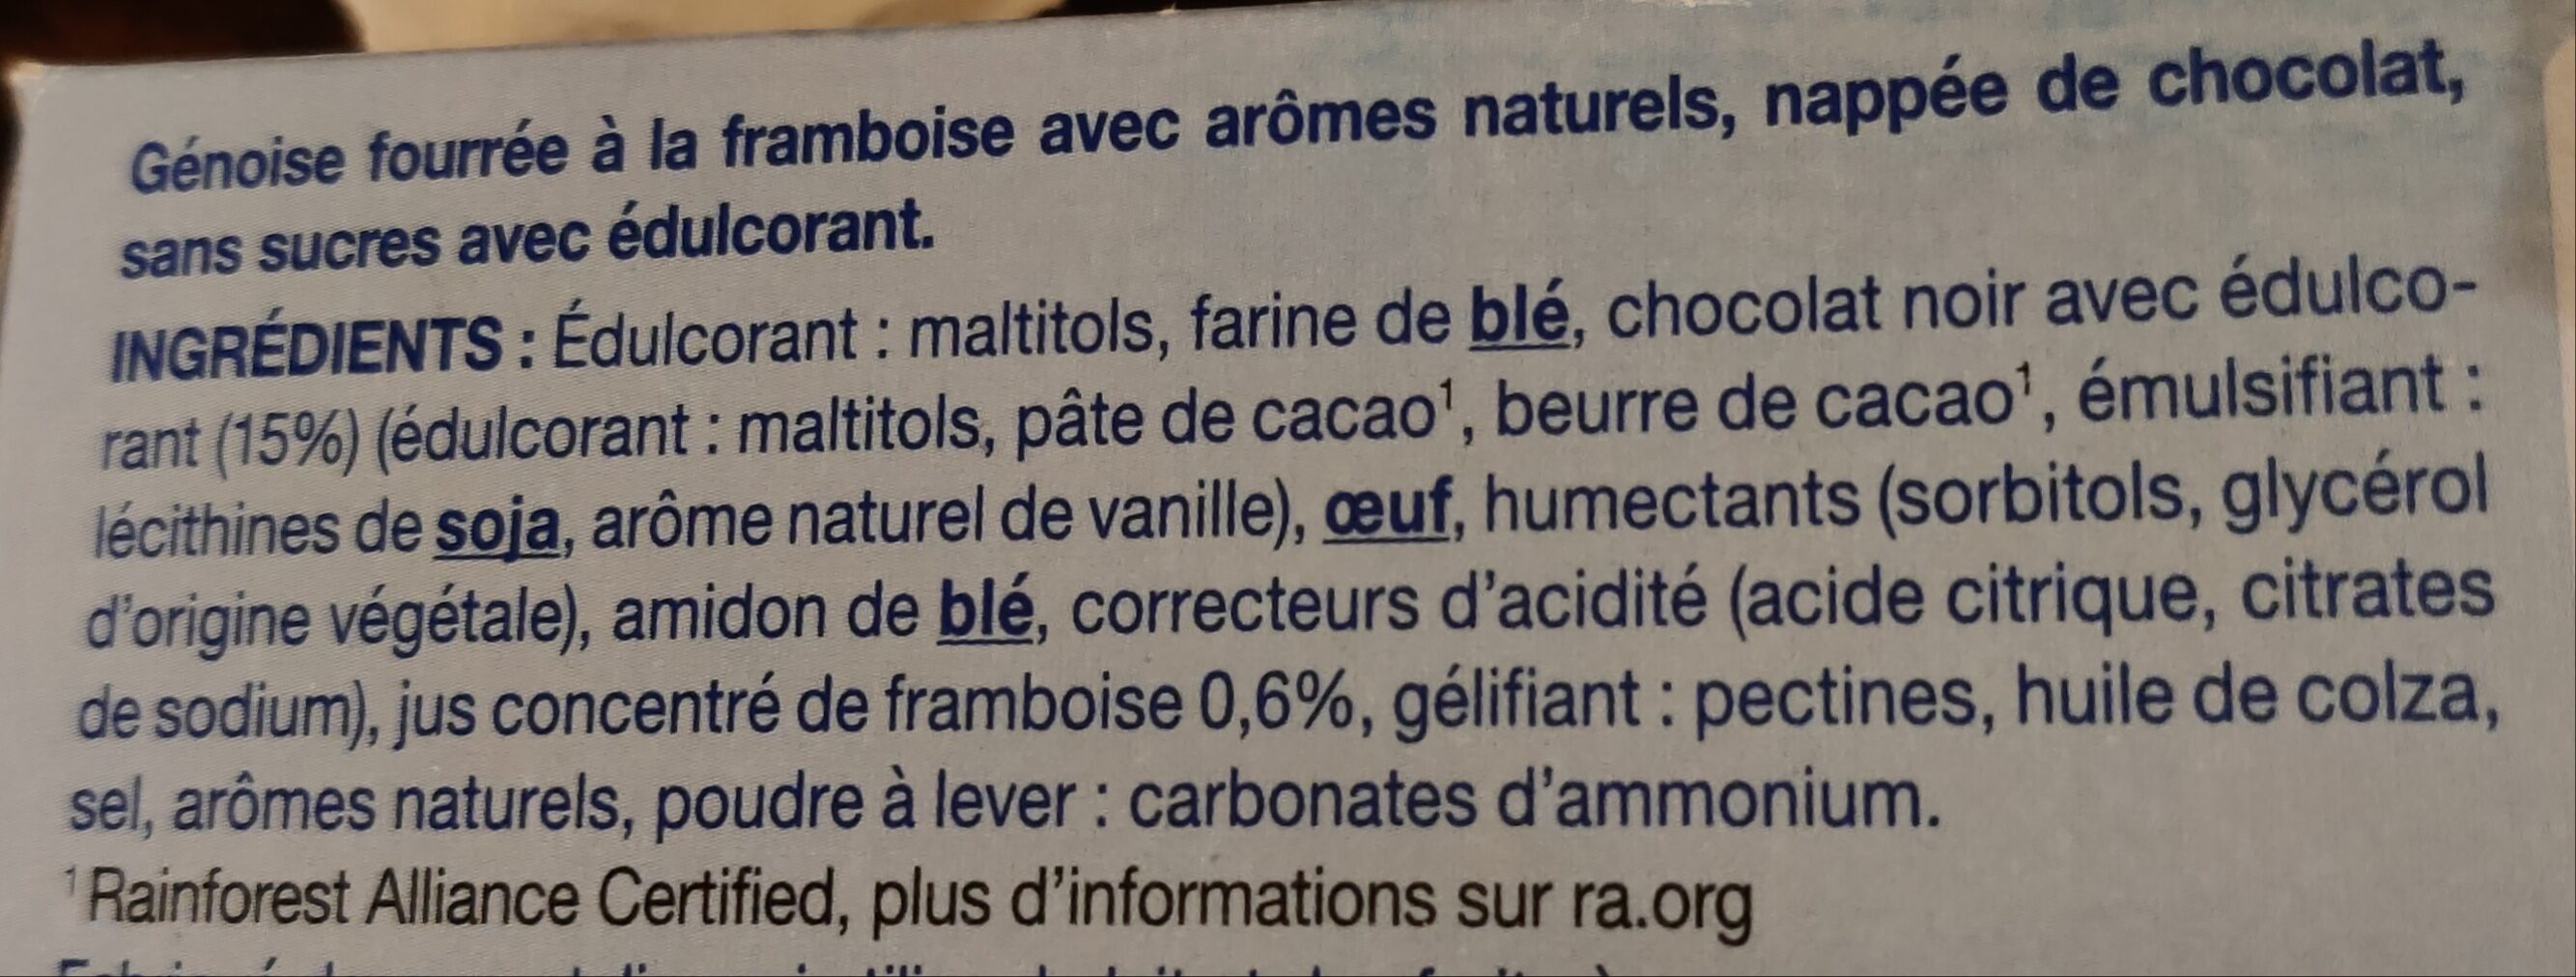 Gerblé sans sucres génoise chocolat saveur framboise - Ingrédients